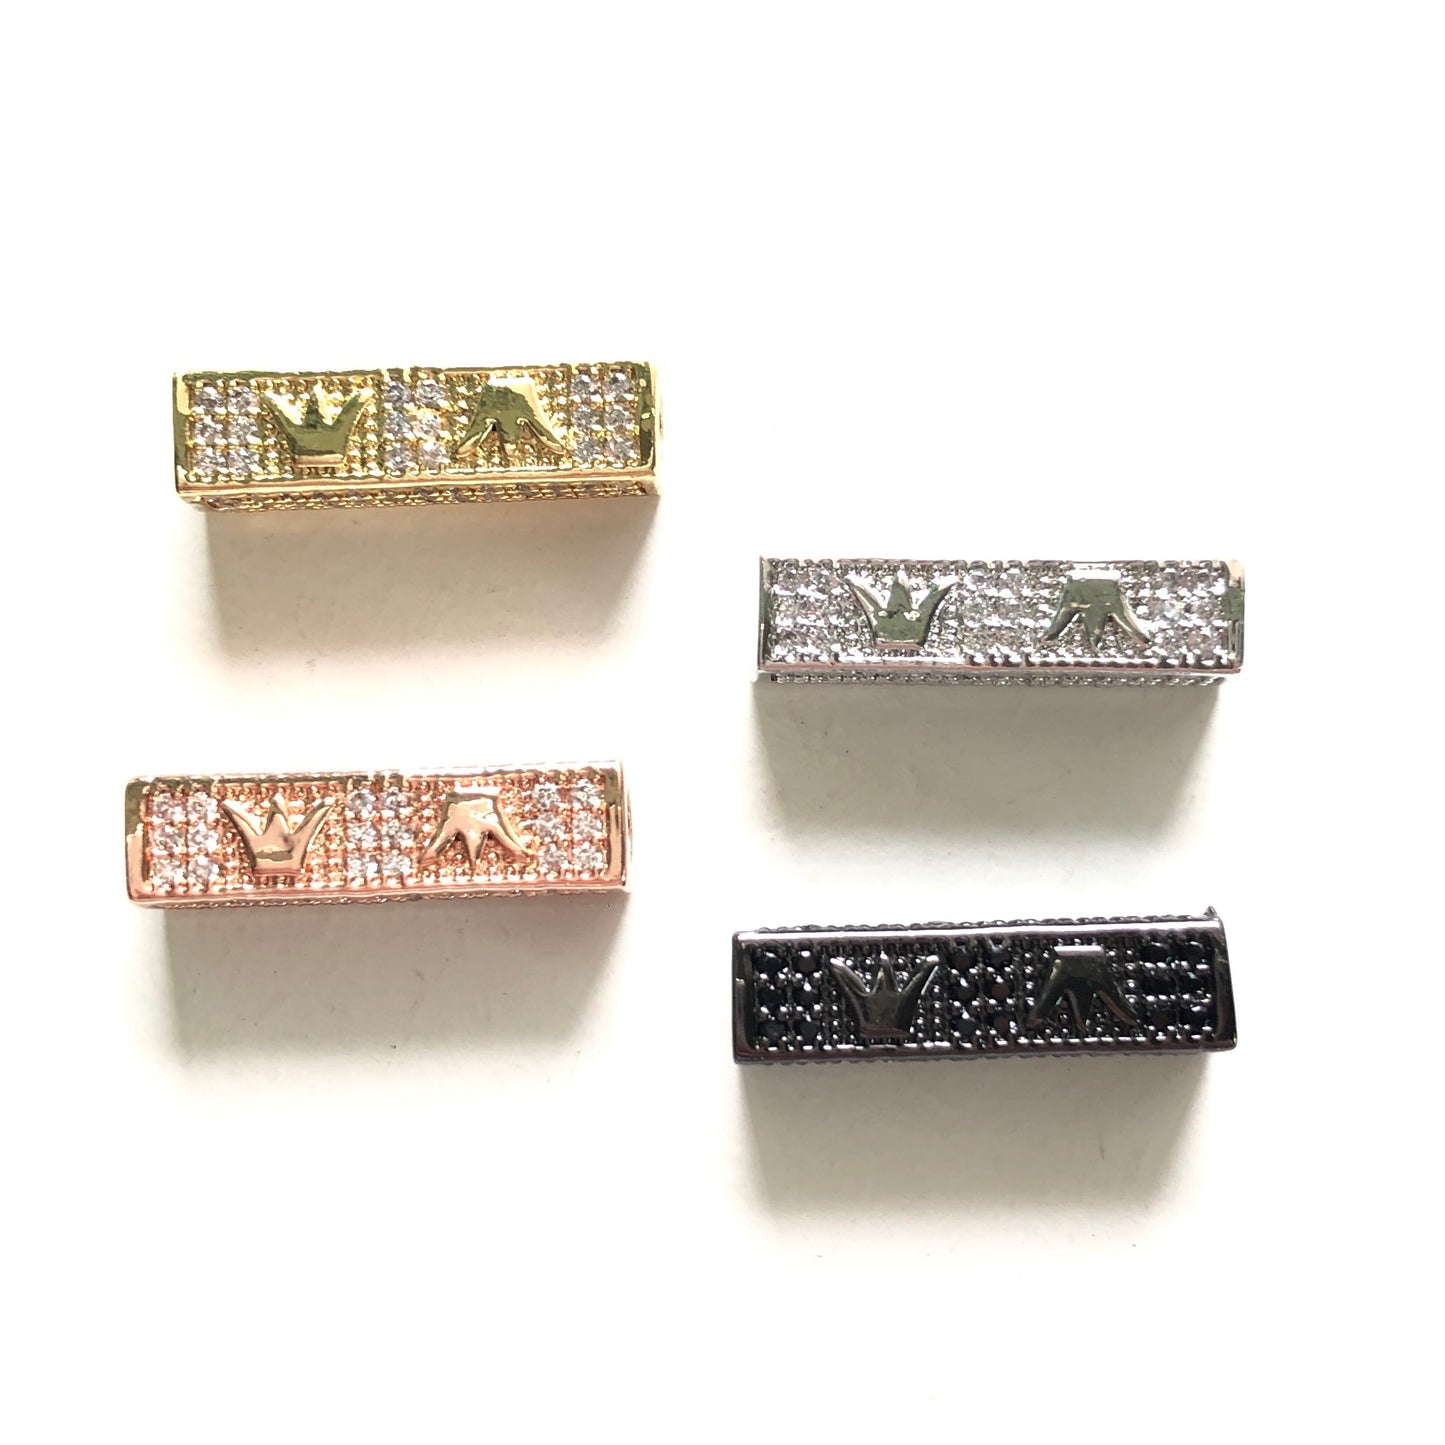 10-20pcs/lot 21*6mm CZ Paved Crown Centerpiece Spacers CZ Paved Spacers Cuboid Spacers Charms Beads Beyond